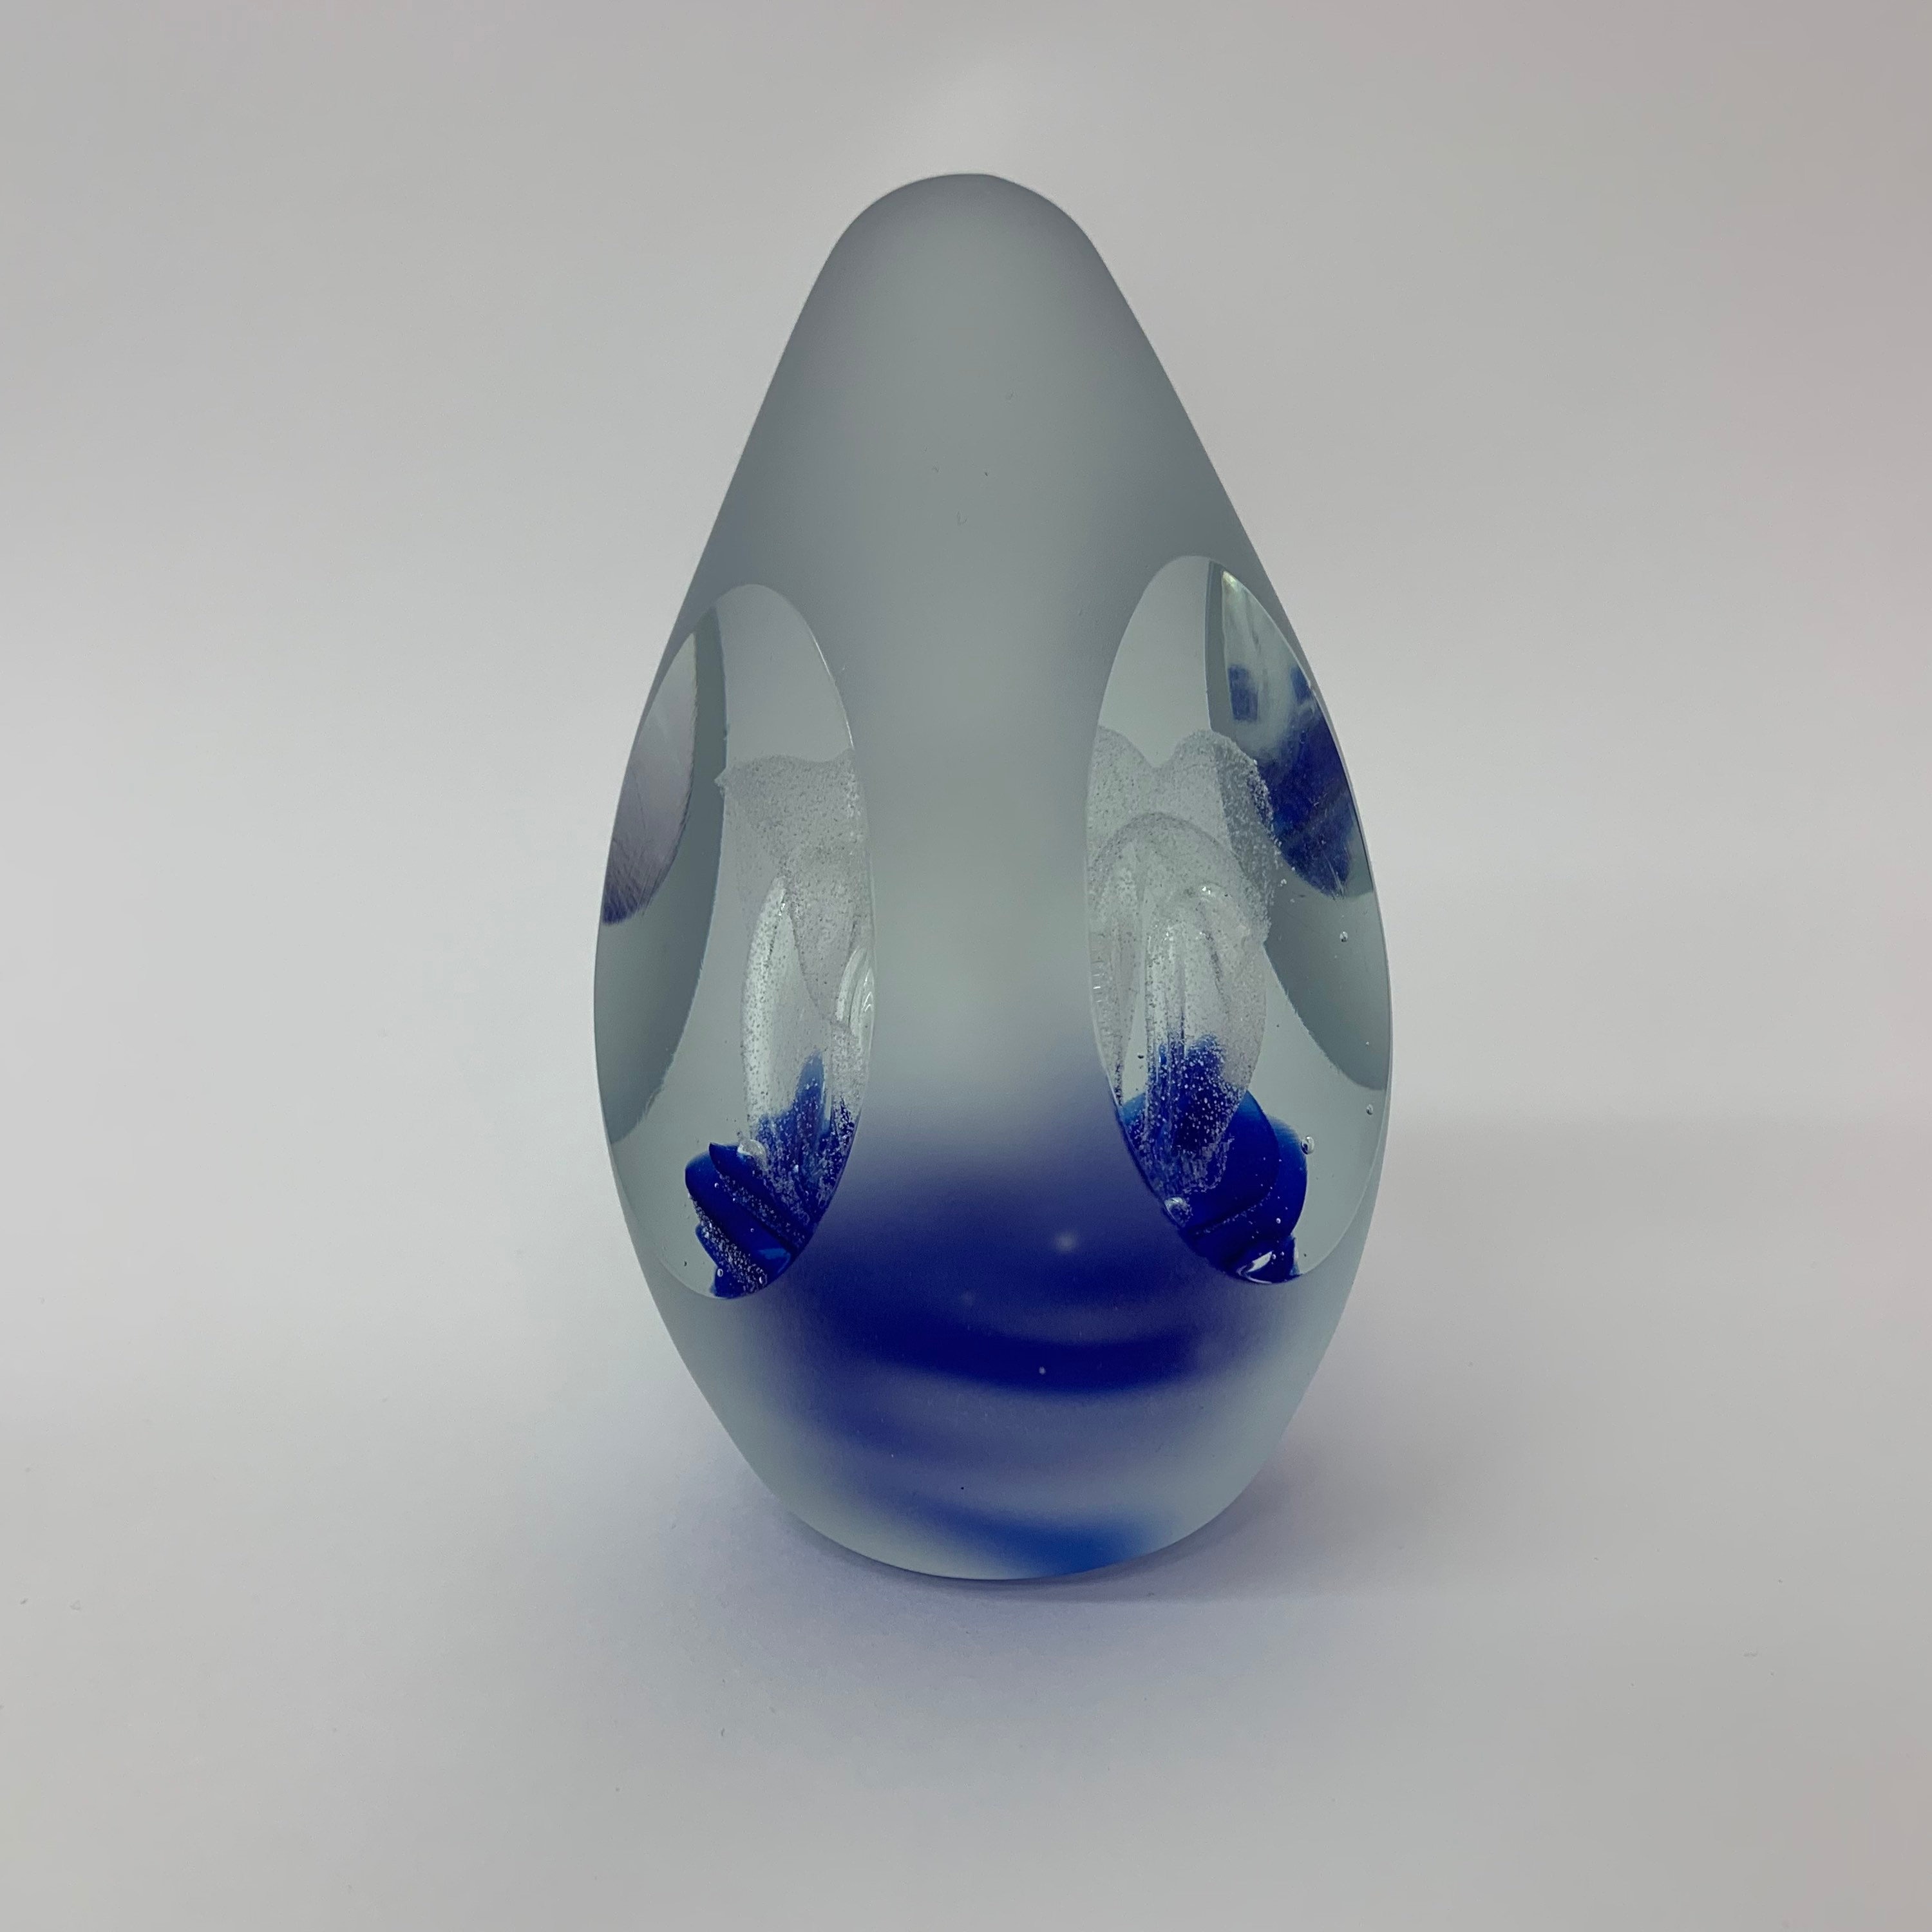 Murano glass presse papier egg shaped